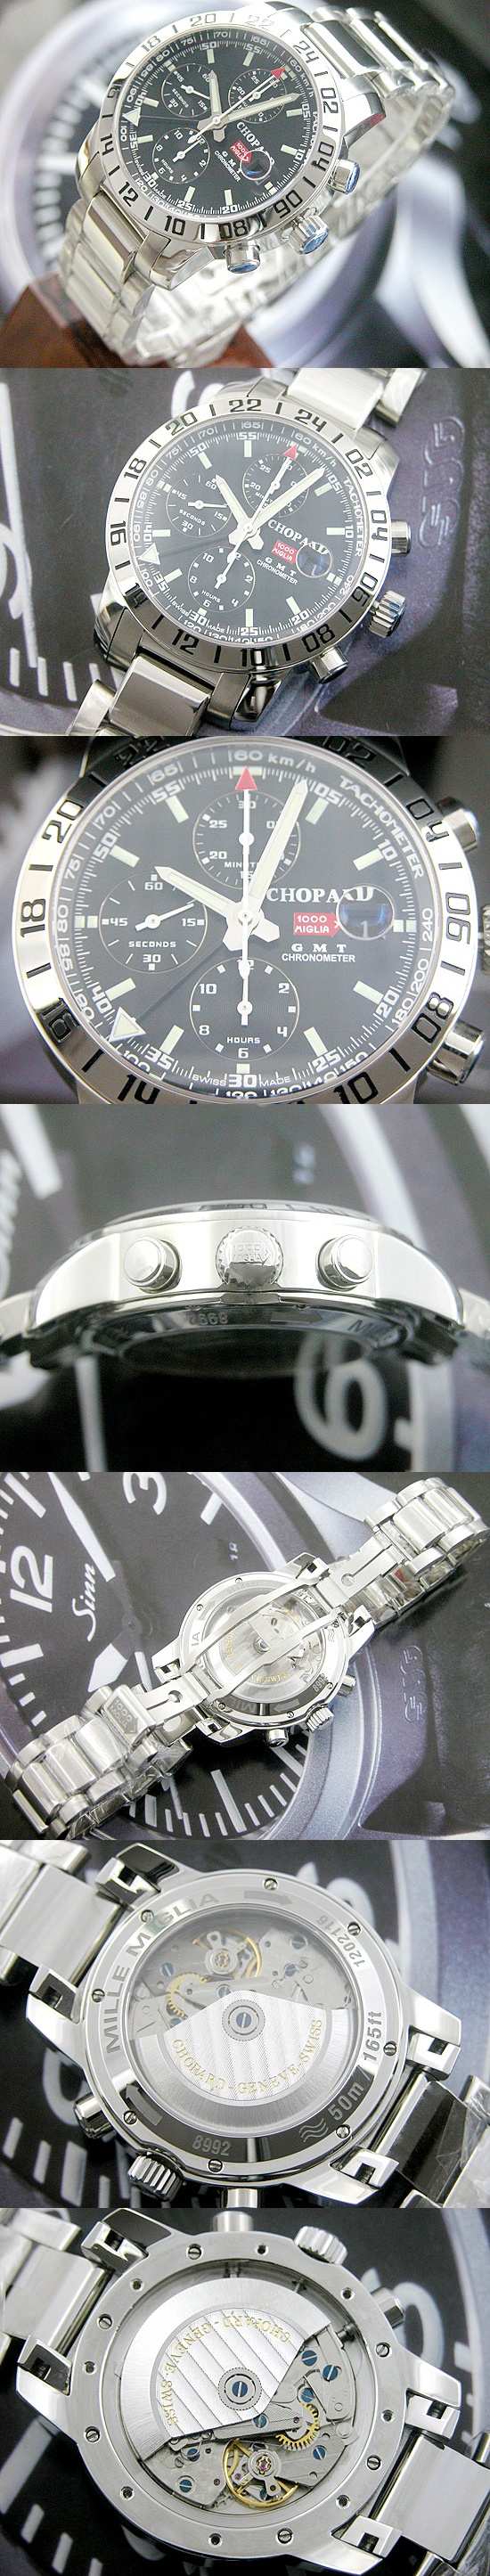 おしゃれなブランド時計がショパール-CHOPARD-ミッレミリアGMT-158992  男性用腕時計を提供します.